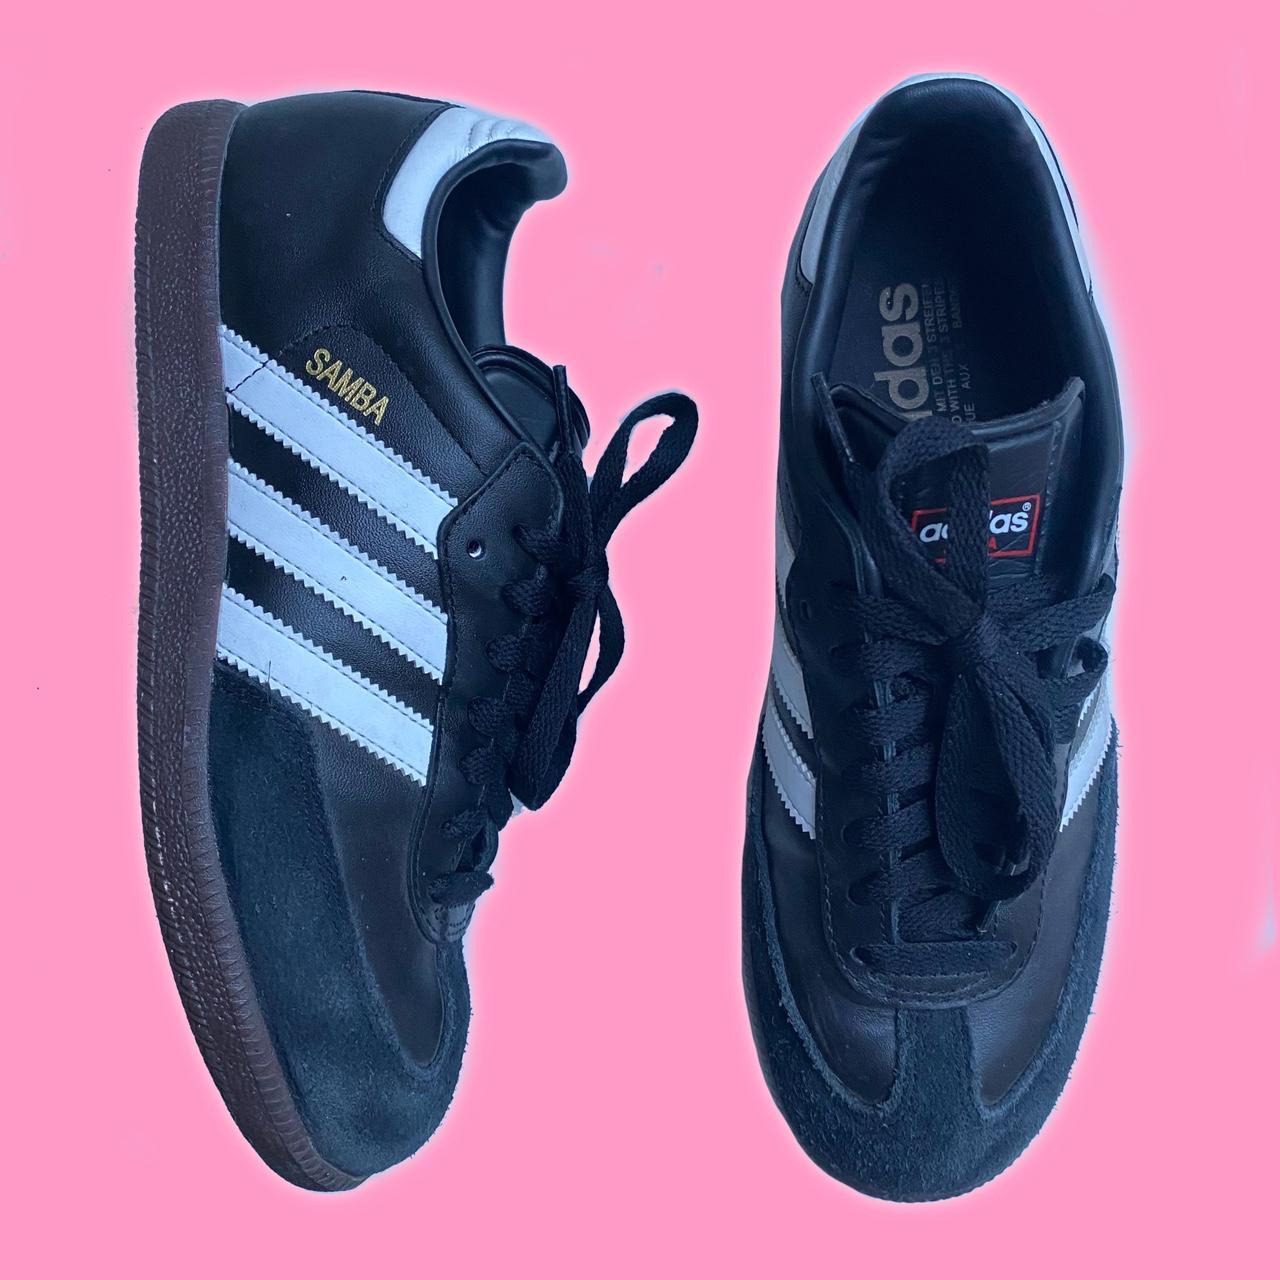 Adidas samba OG trainers Black / white /... - Depop